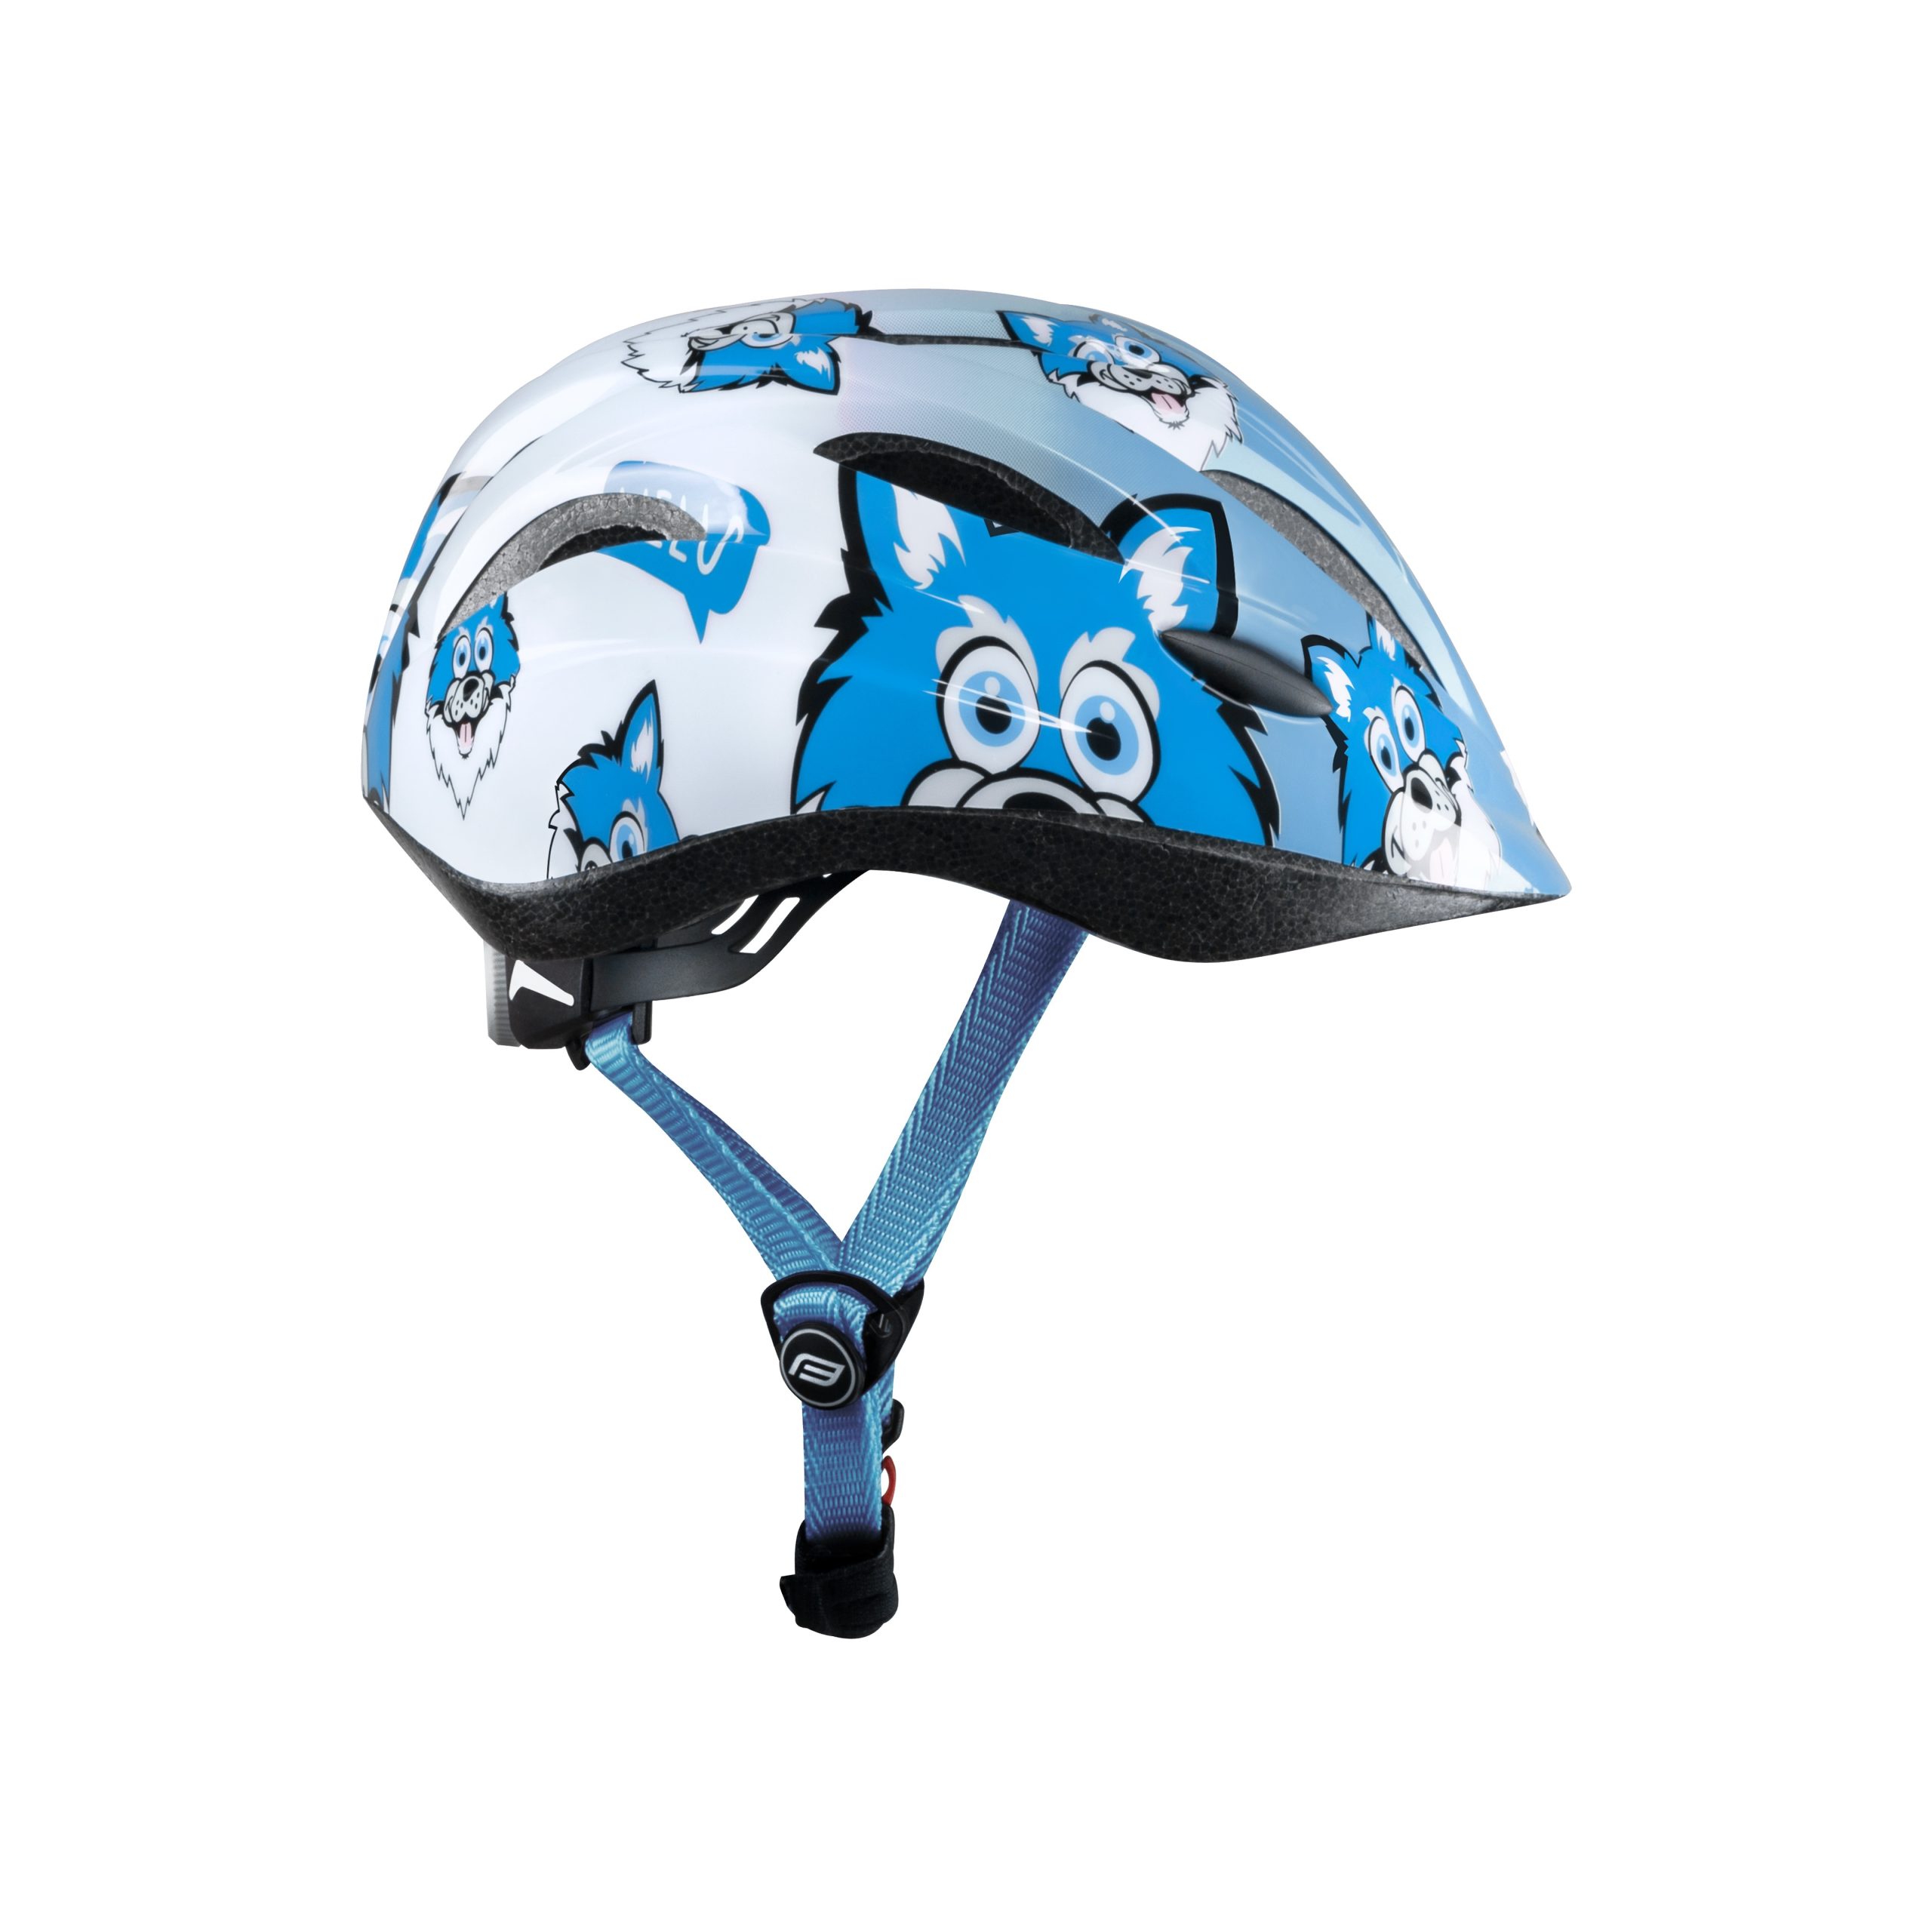 helmet-force-wolfie-junior-blue-white-img-902640_det1-fd-11